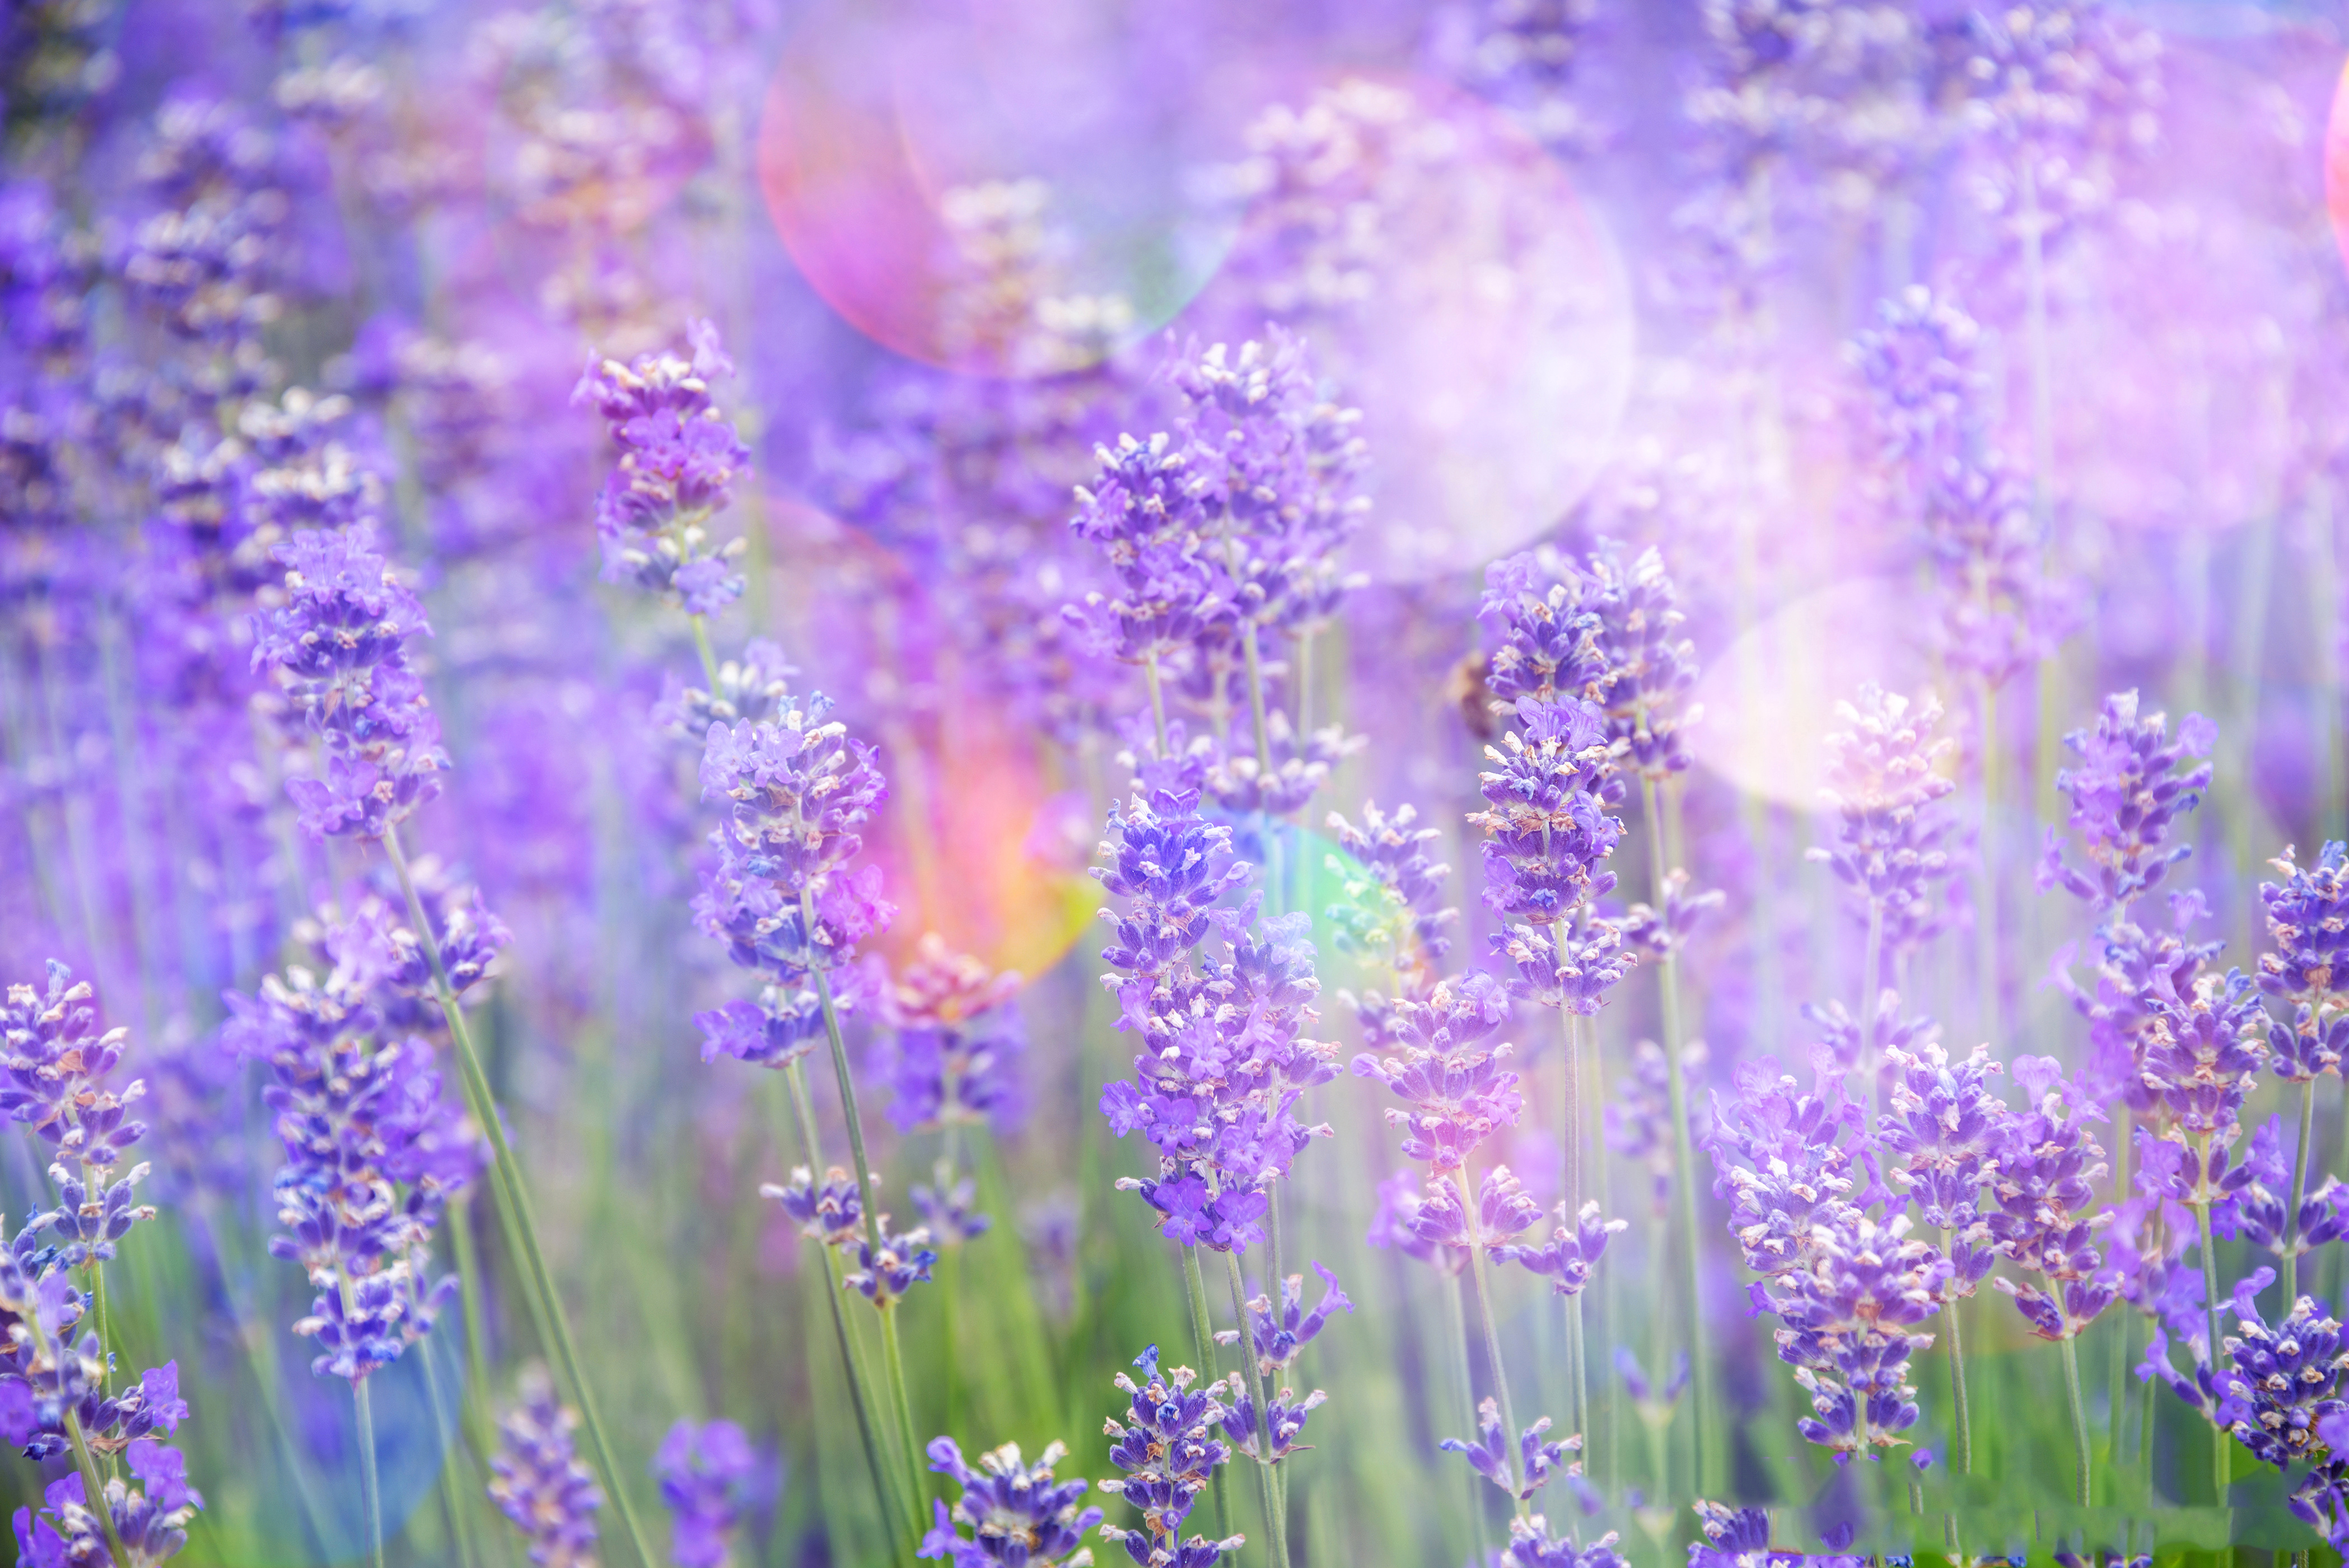 Ảnh Chill Hoa Thư Thái - bức ảnh này mang đến cho bạn cảm giác thư thái như đang ngồi trong một khu vườn yên tĩnh, bên cạnh những khuôn viên hoa tươi tắn. Mùi hương dịu nhẹ, tuyệt đẹp được tái hiện một cách tinh tế trên màn hình điện thoại của bạn.